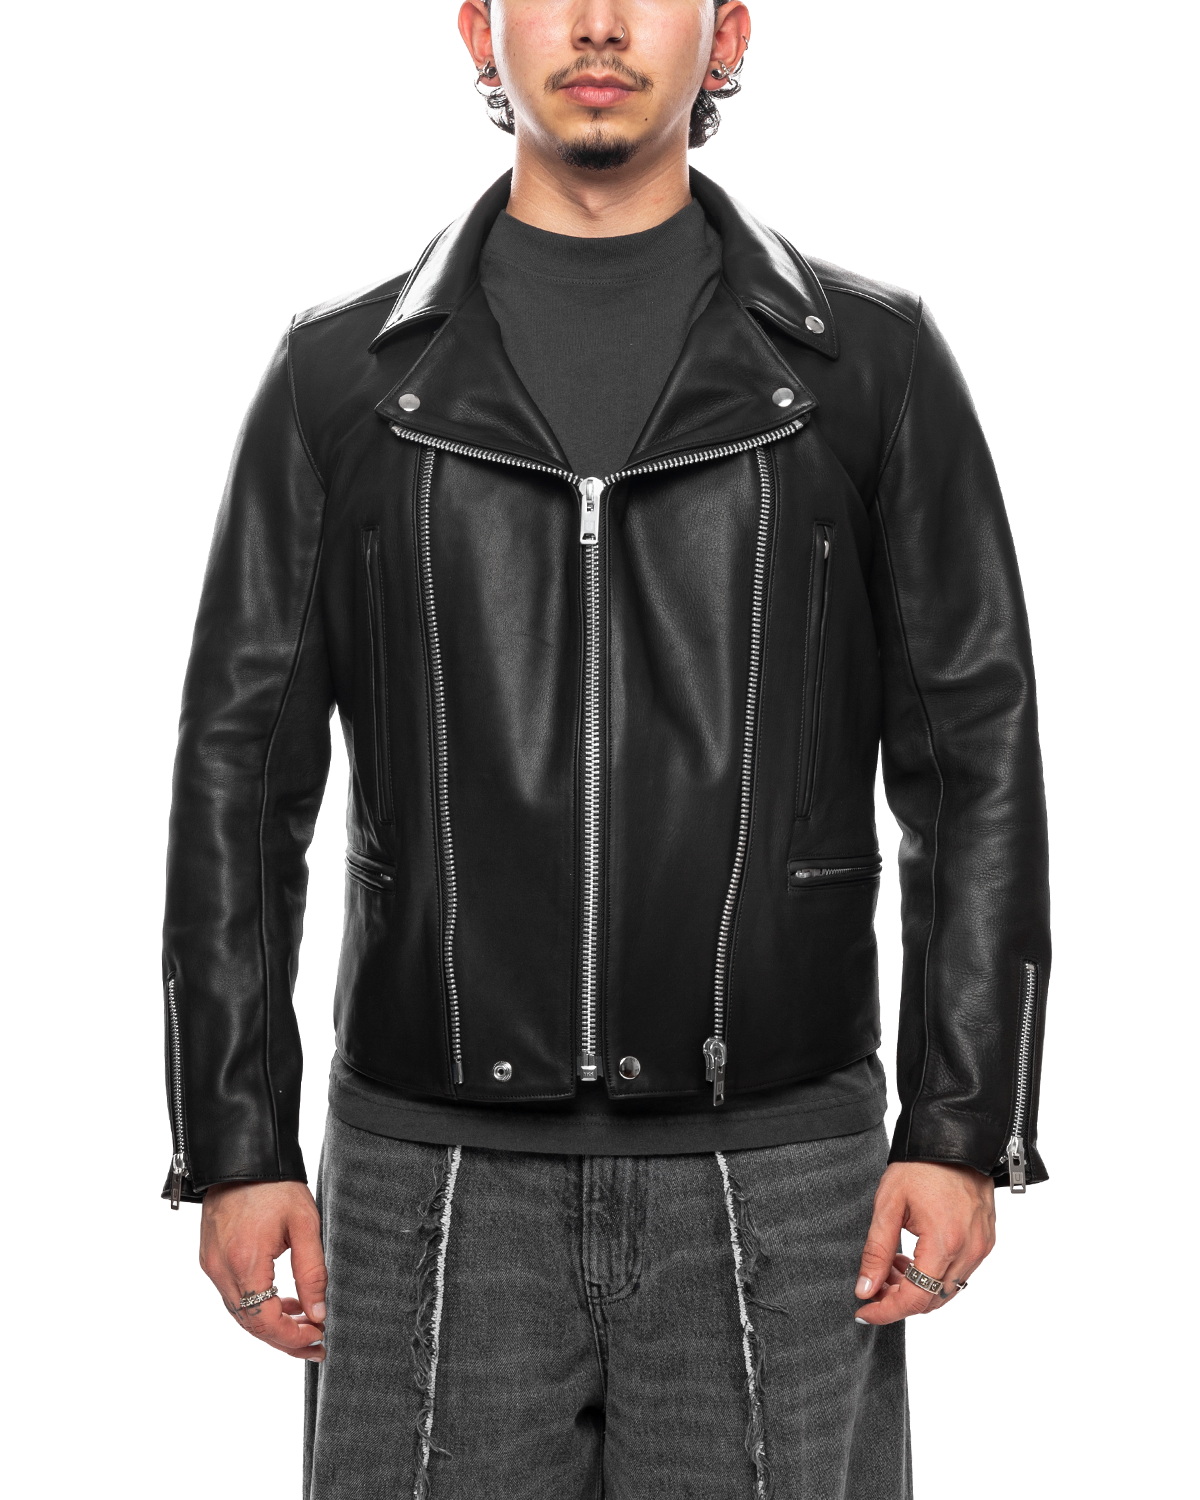 LIKELIHOOD UC2C9204 Biker – UNDERCOVER Leather Black Jacket